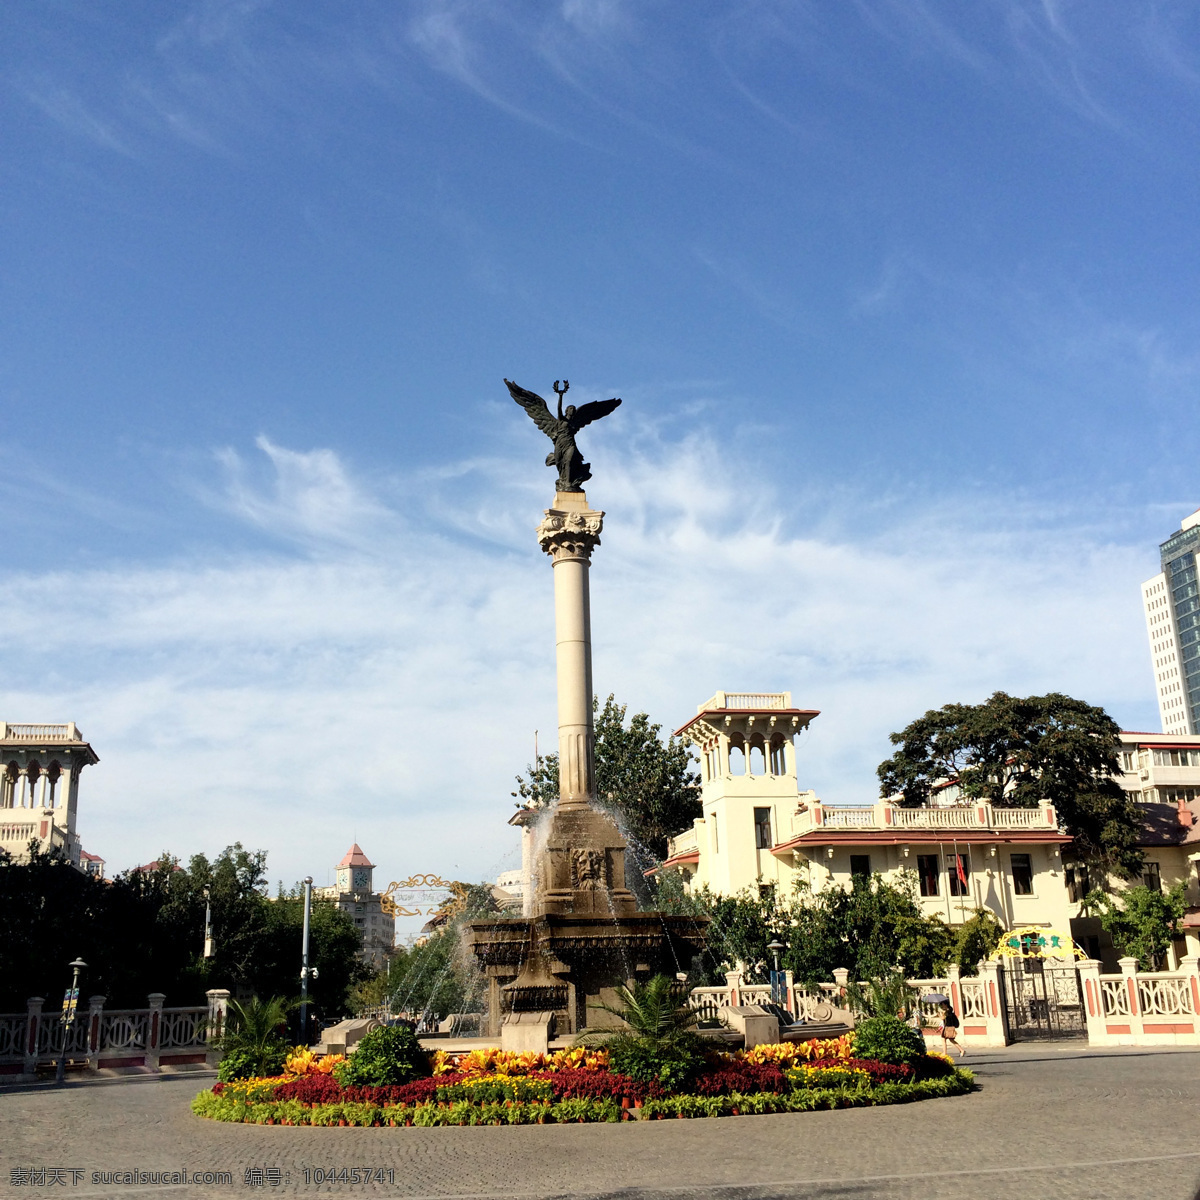 天津 意式 风情区 意式风情区 雕像 喷泉 旅游摄影 国内旅游